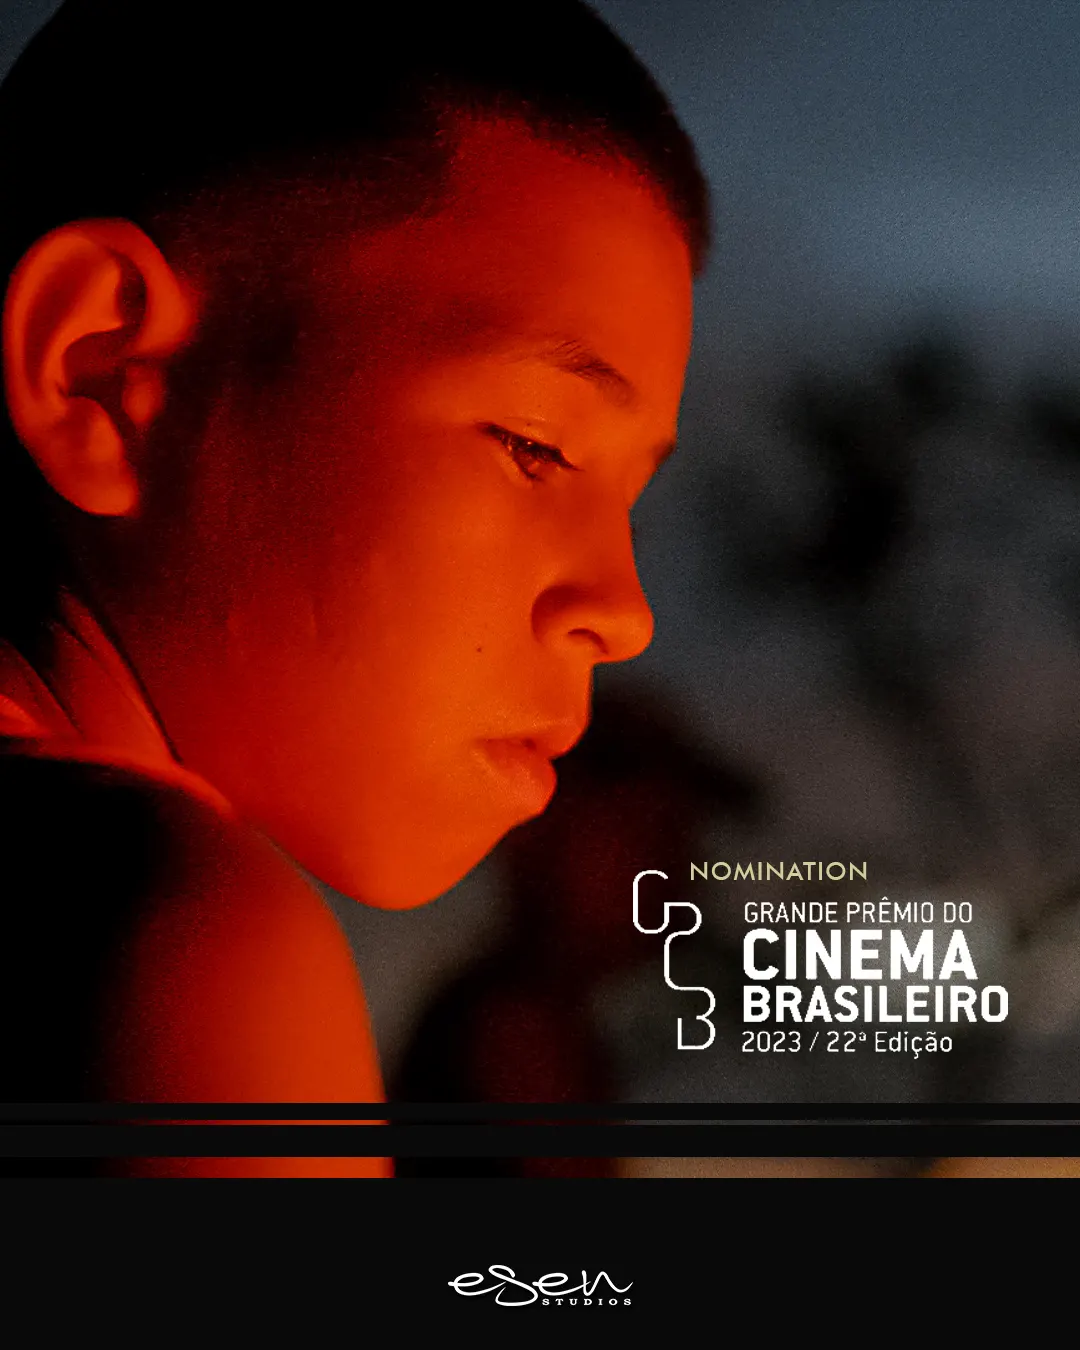 “Through the deep west” al Grande Prêmio do Cinema Brasileiro